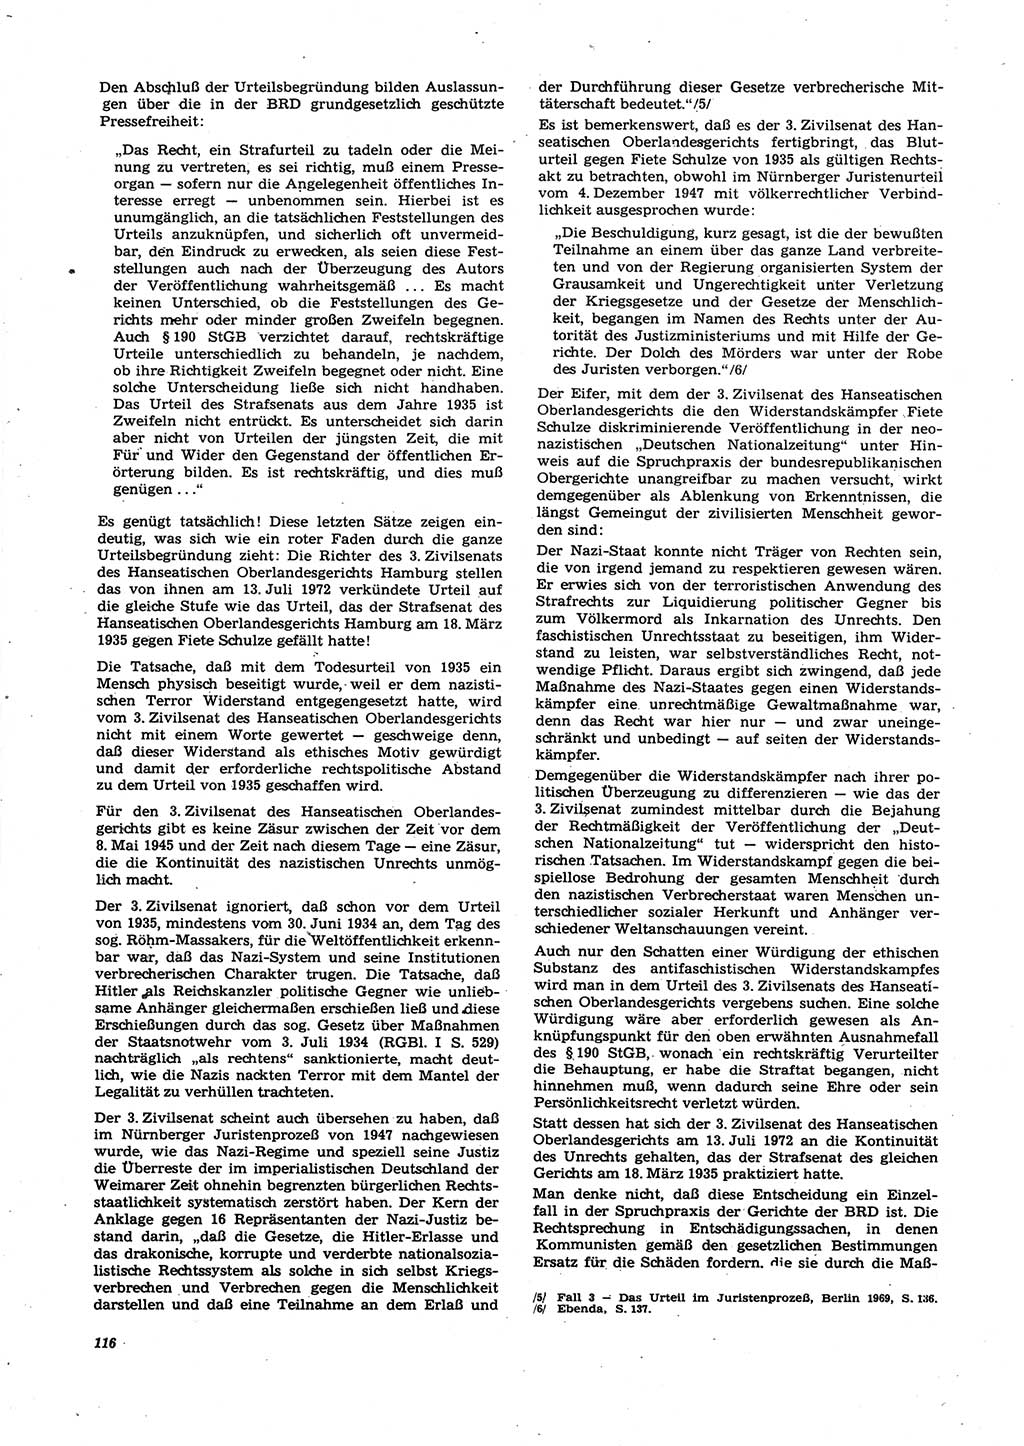 Neue Justiz (NJ), Zeitschrift für Recht und Rechtswissenschaft [Deutsche Demokratische Republik (DDR)], 27. Jahrgang 1973, Seite 116 (NJ DDR 1973, S. 116)